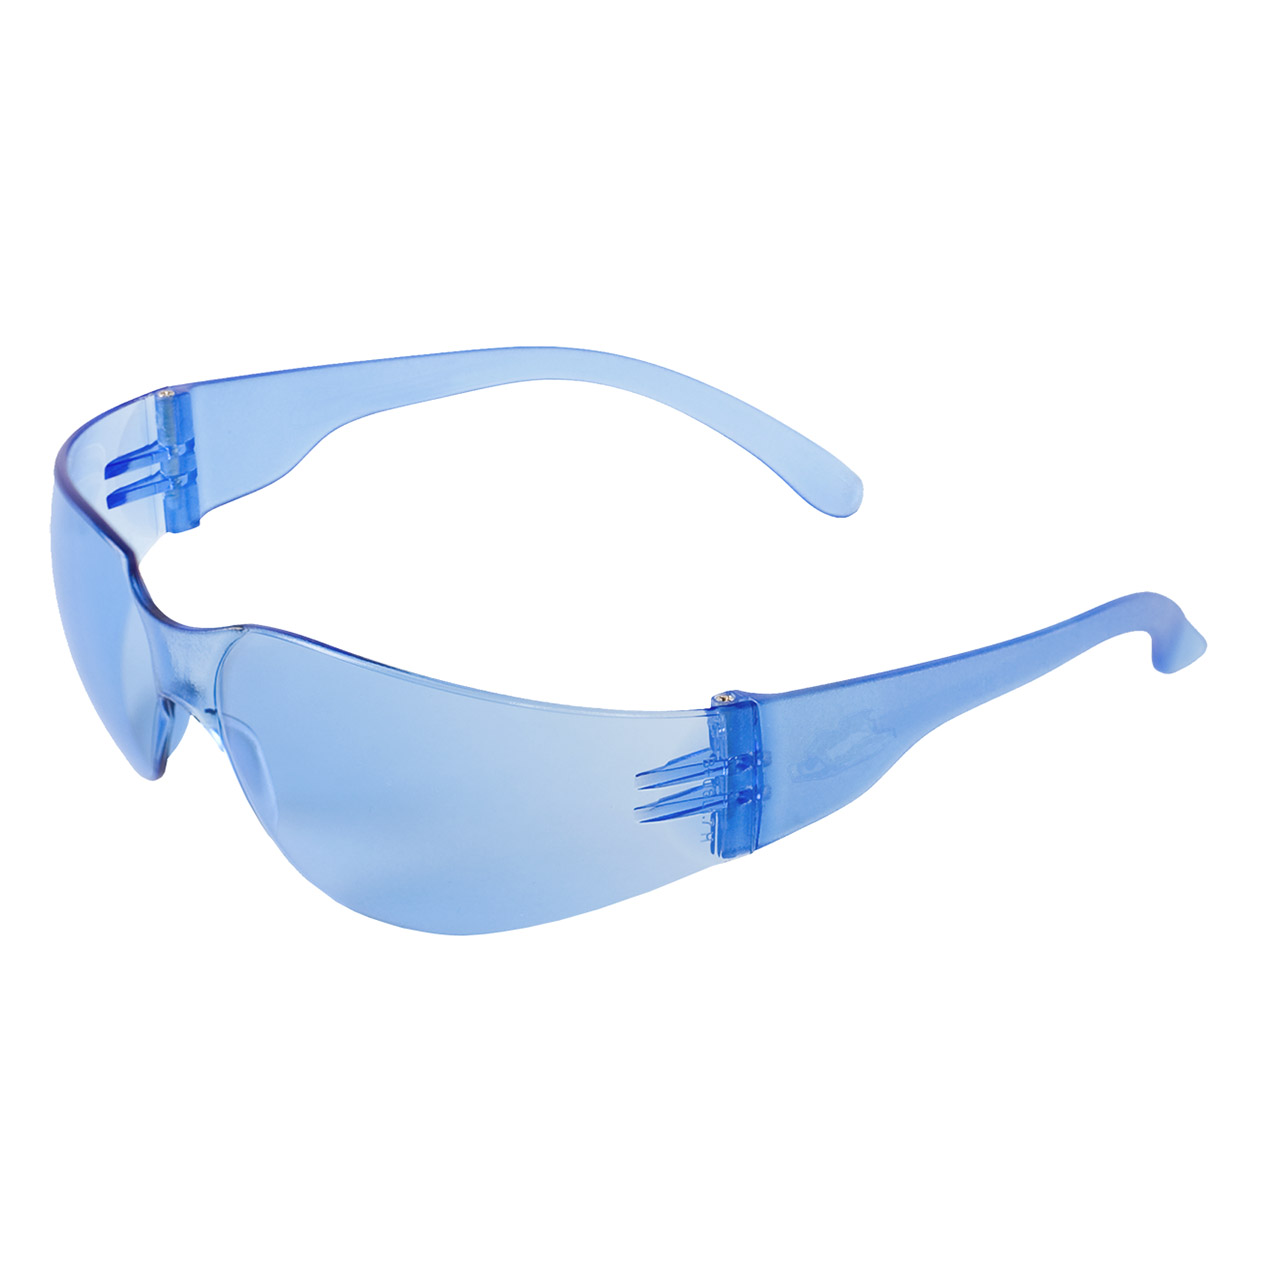 Samco Sg04 Light Blue Safety Glasses 0104r